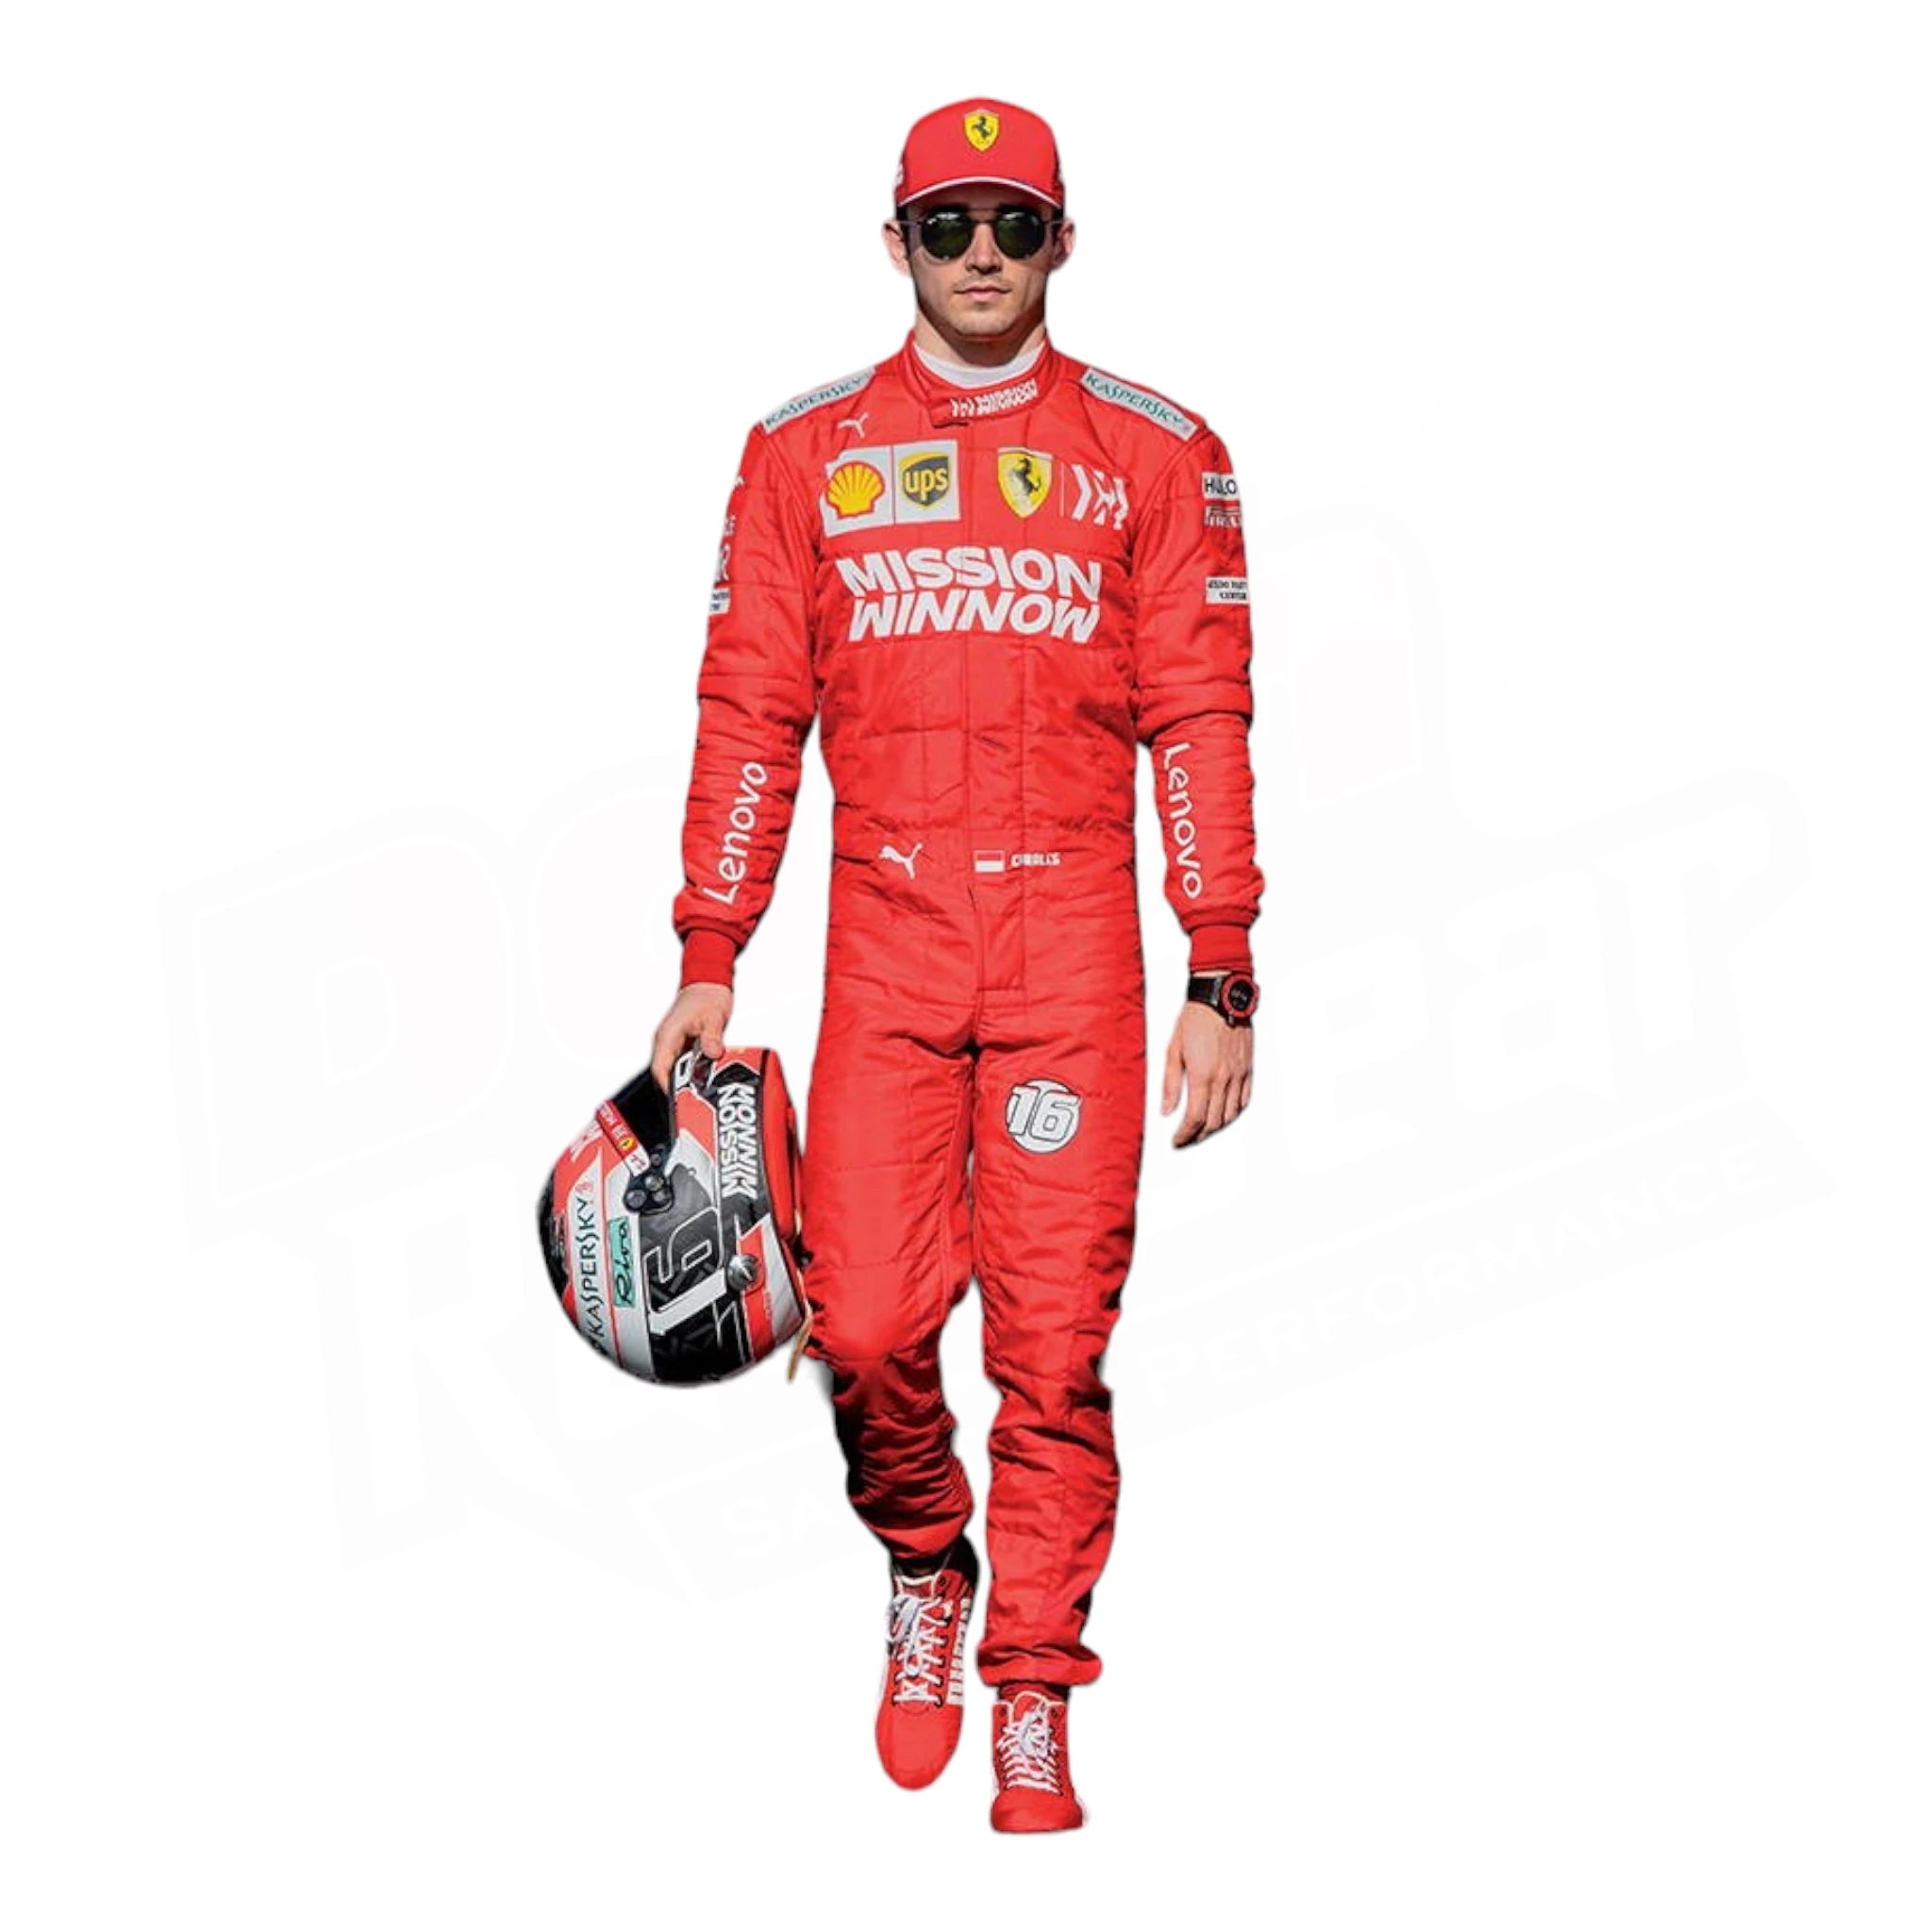 Charles_Leclerc_2019_Ferrari_F1_Race_Suit.webp